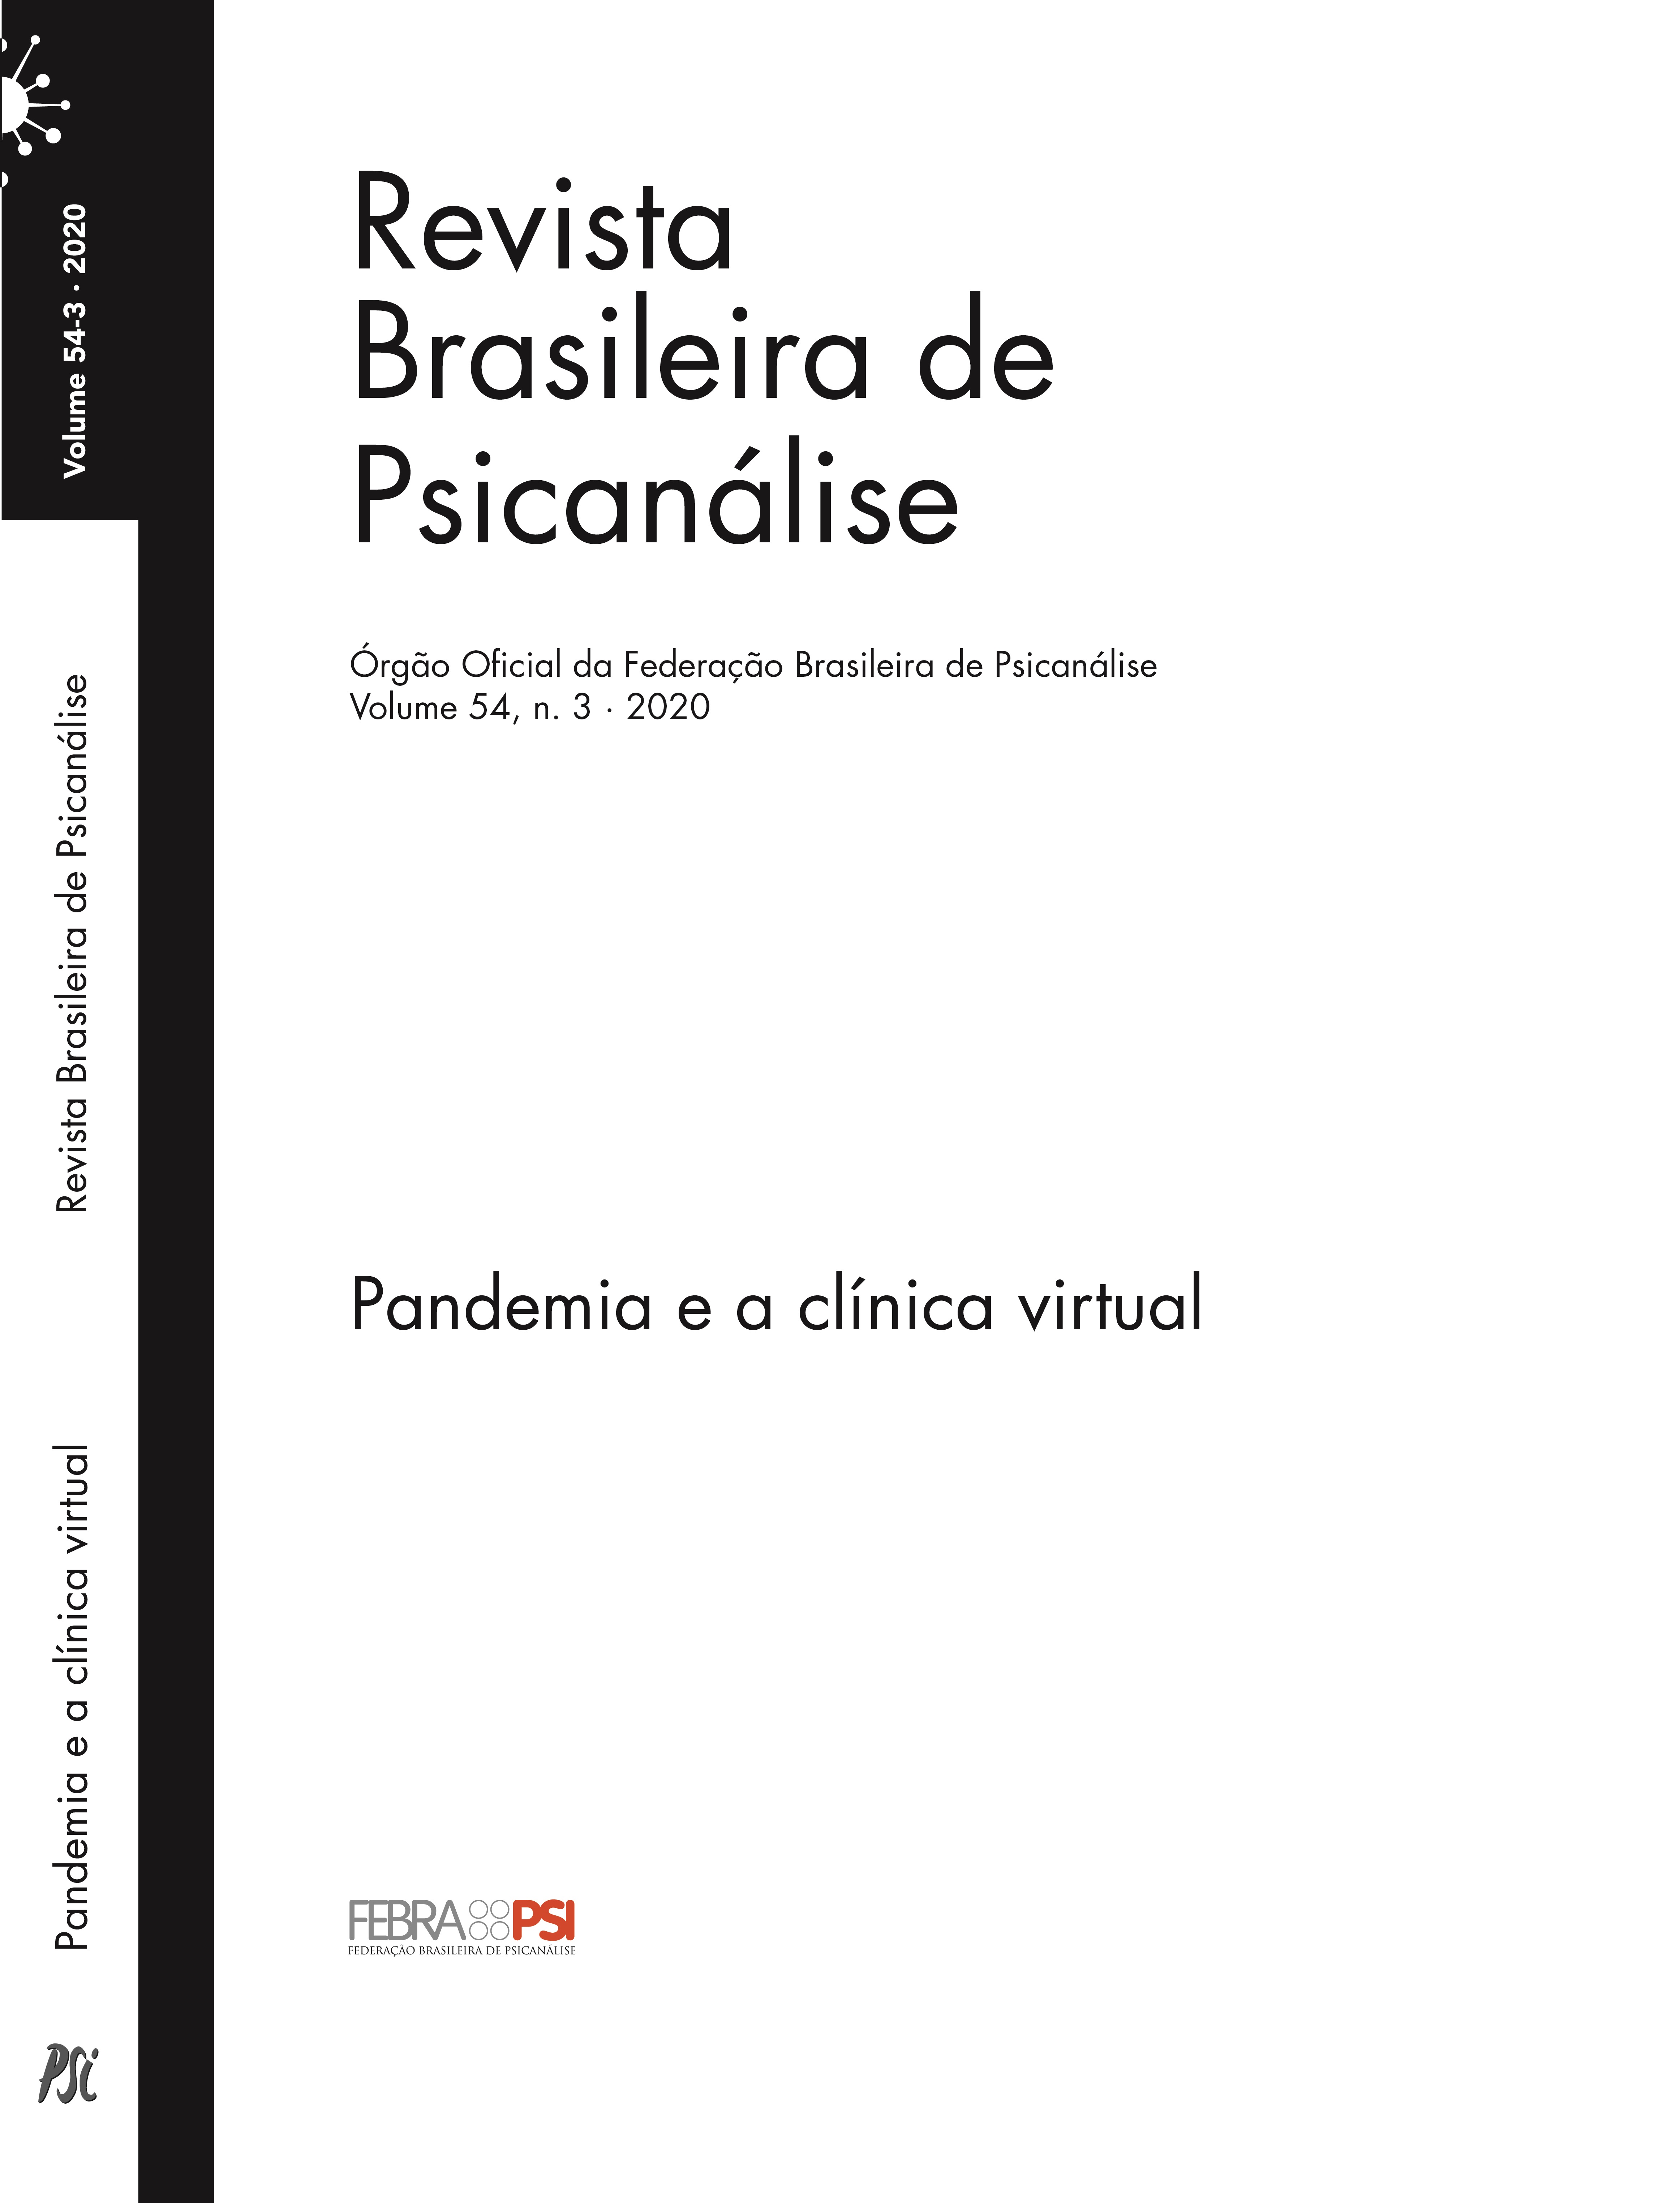 Pandemia e a clínica virtual